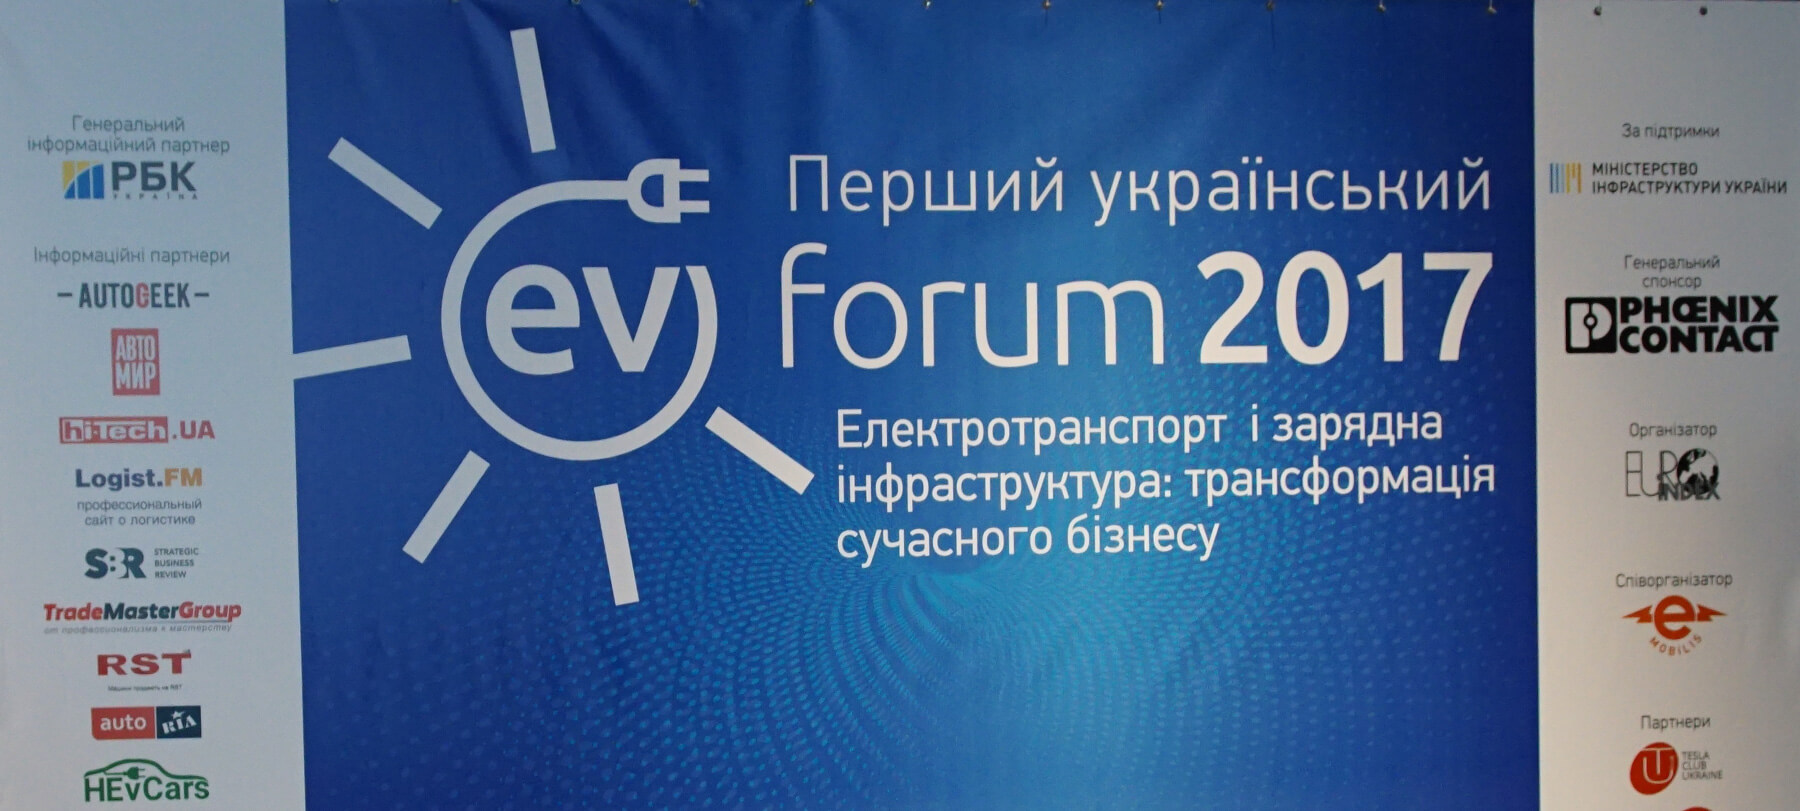 Первый украинский EV Forum «Электротранспорт и зарядная инфраструктура: трансформация современного бизнеса»